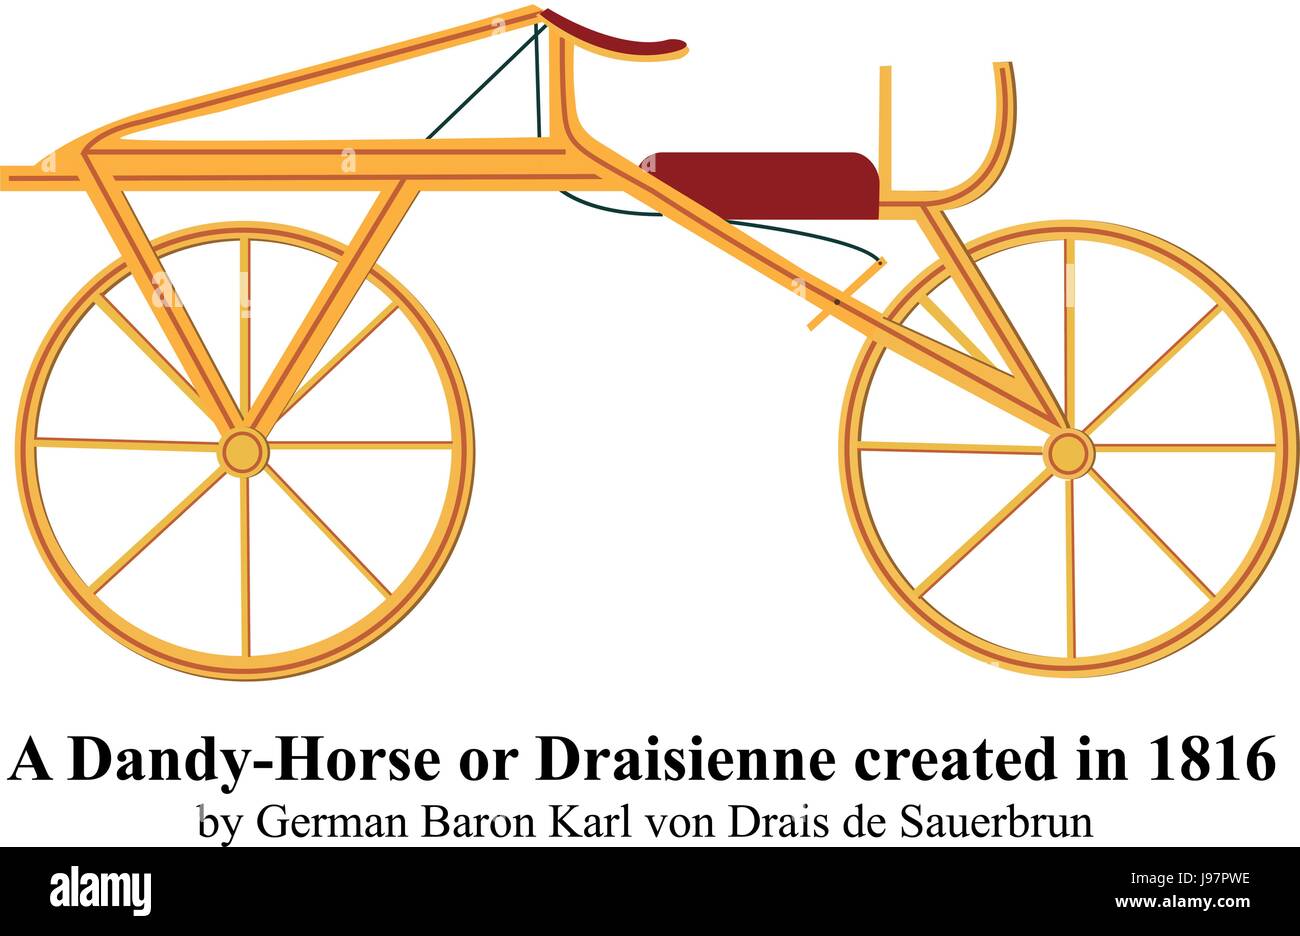 Un Dandy-Horse o Draisienne creato nel 1816 dal barone tedesco Karl von Drais de Sauerbrun illustrazione vettoriale. Illustrazione Vettoriale